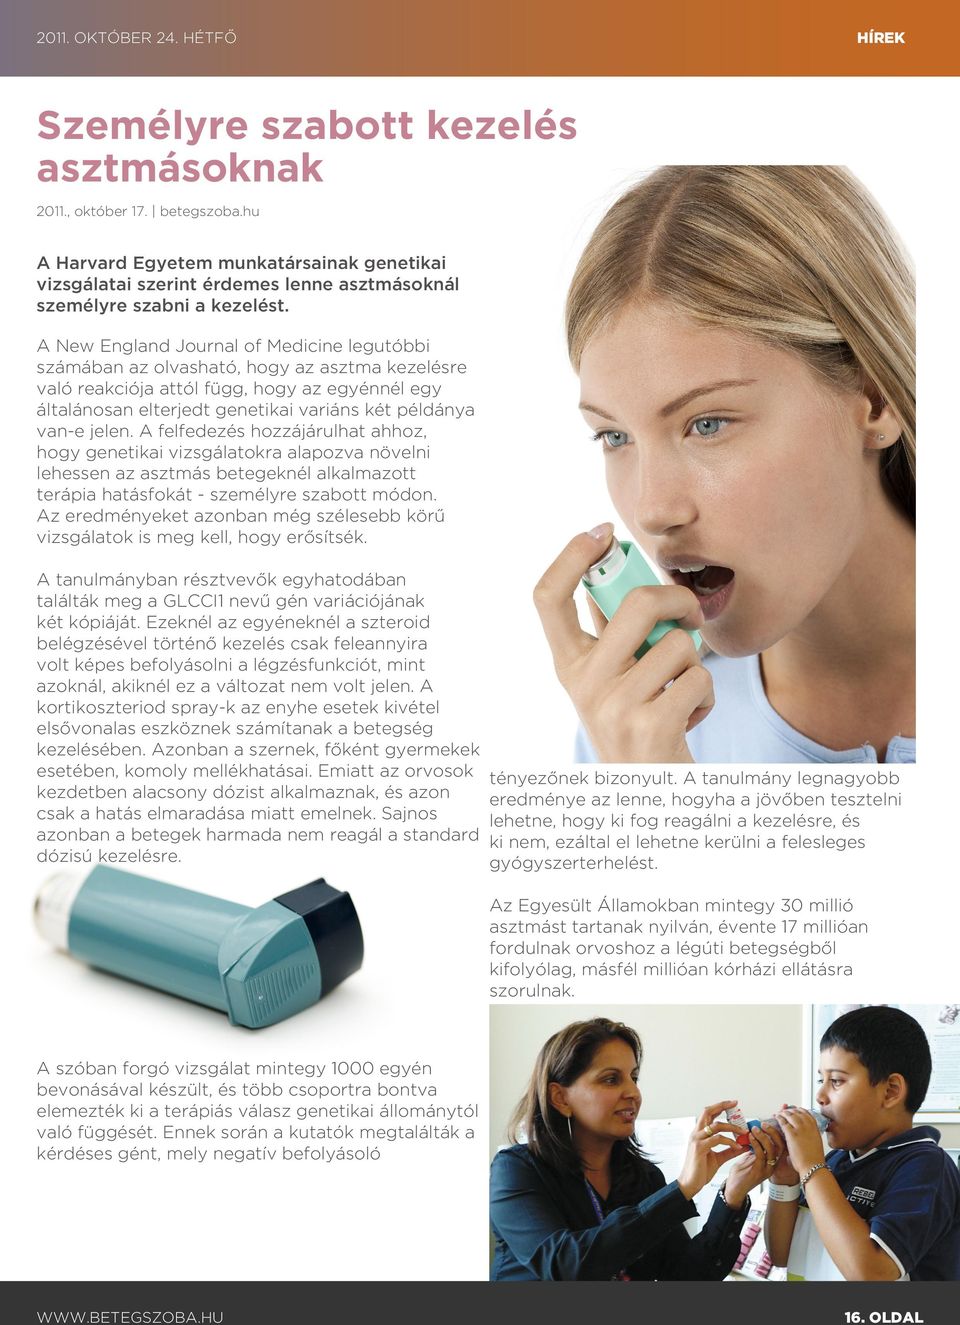 A New England Journal of Medicine legutóbbi számában az olvasható, hogy az asztma kezelésre való reakciója attól függ, hogy az egyénnél egy általánosan elterjedt genetikai variáns két példánya van-e